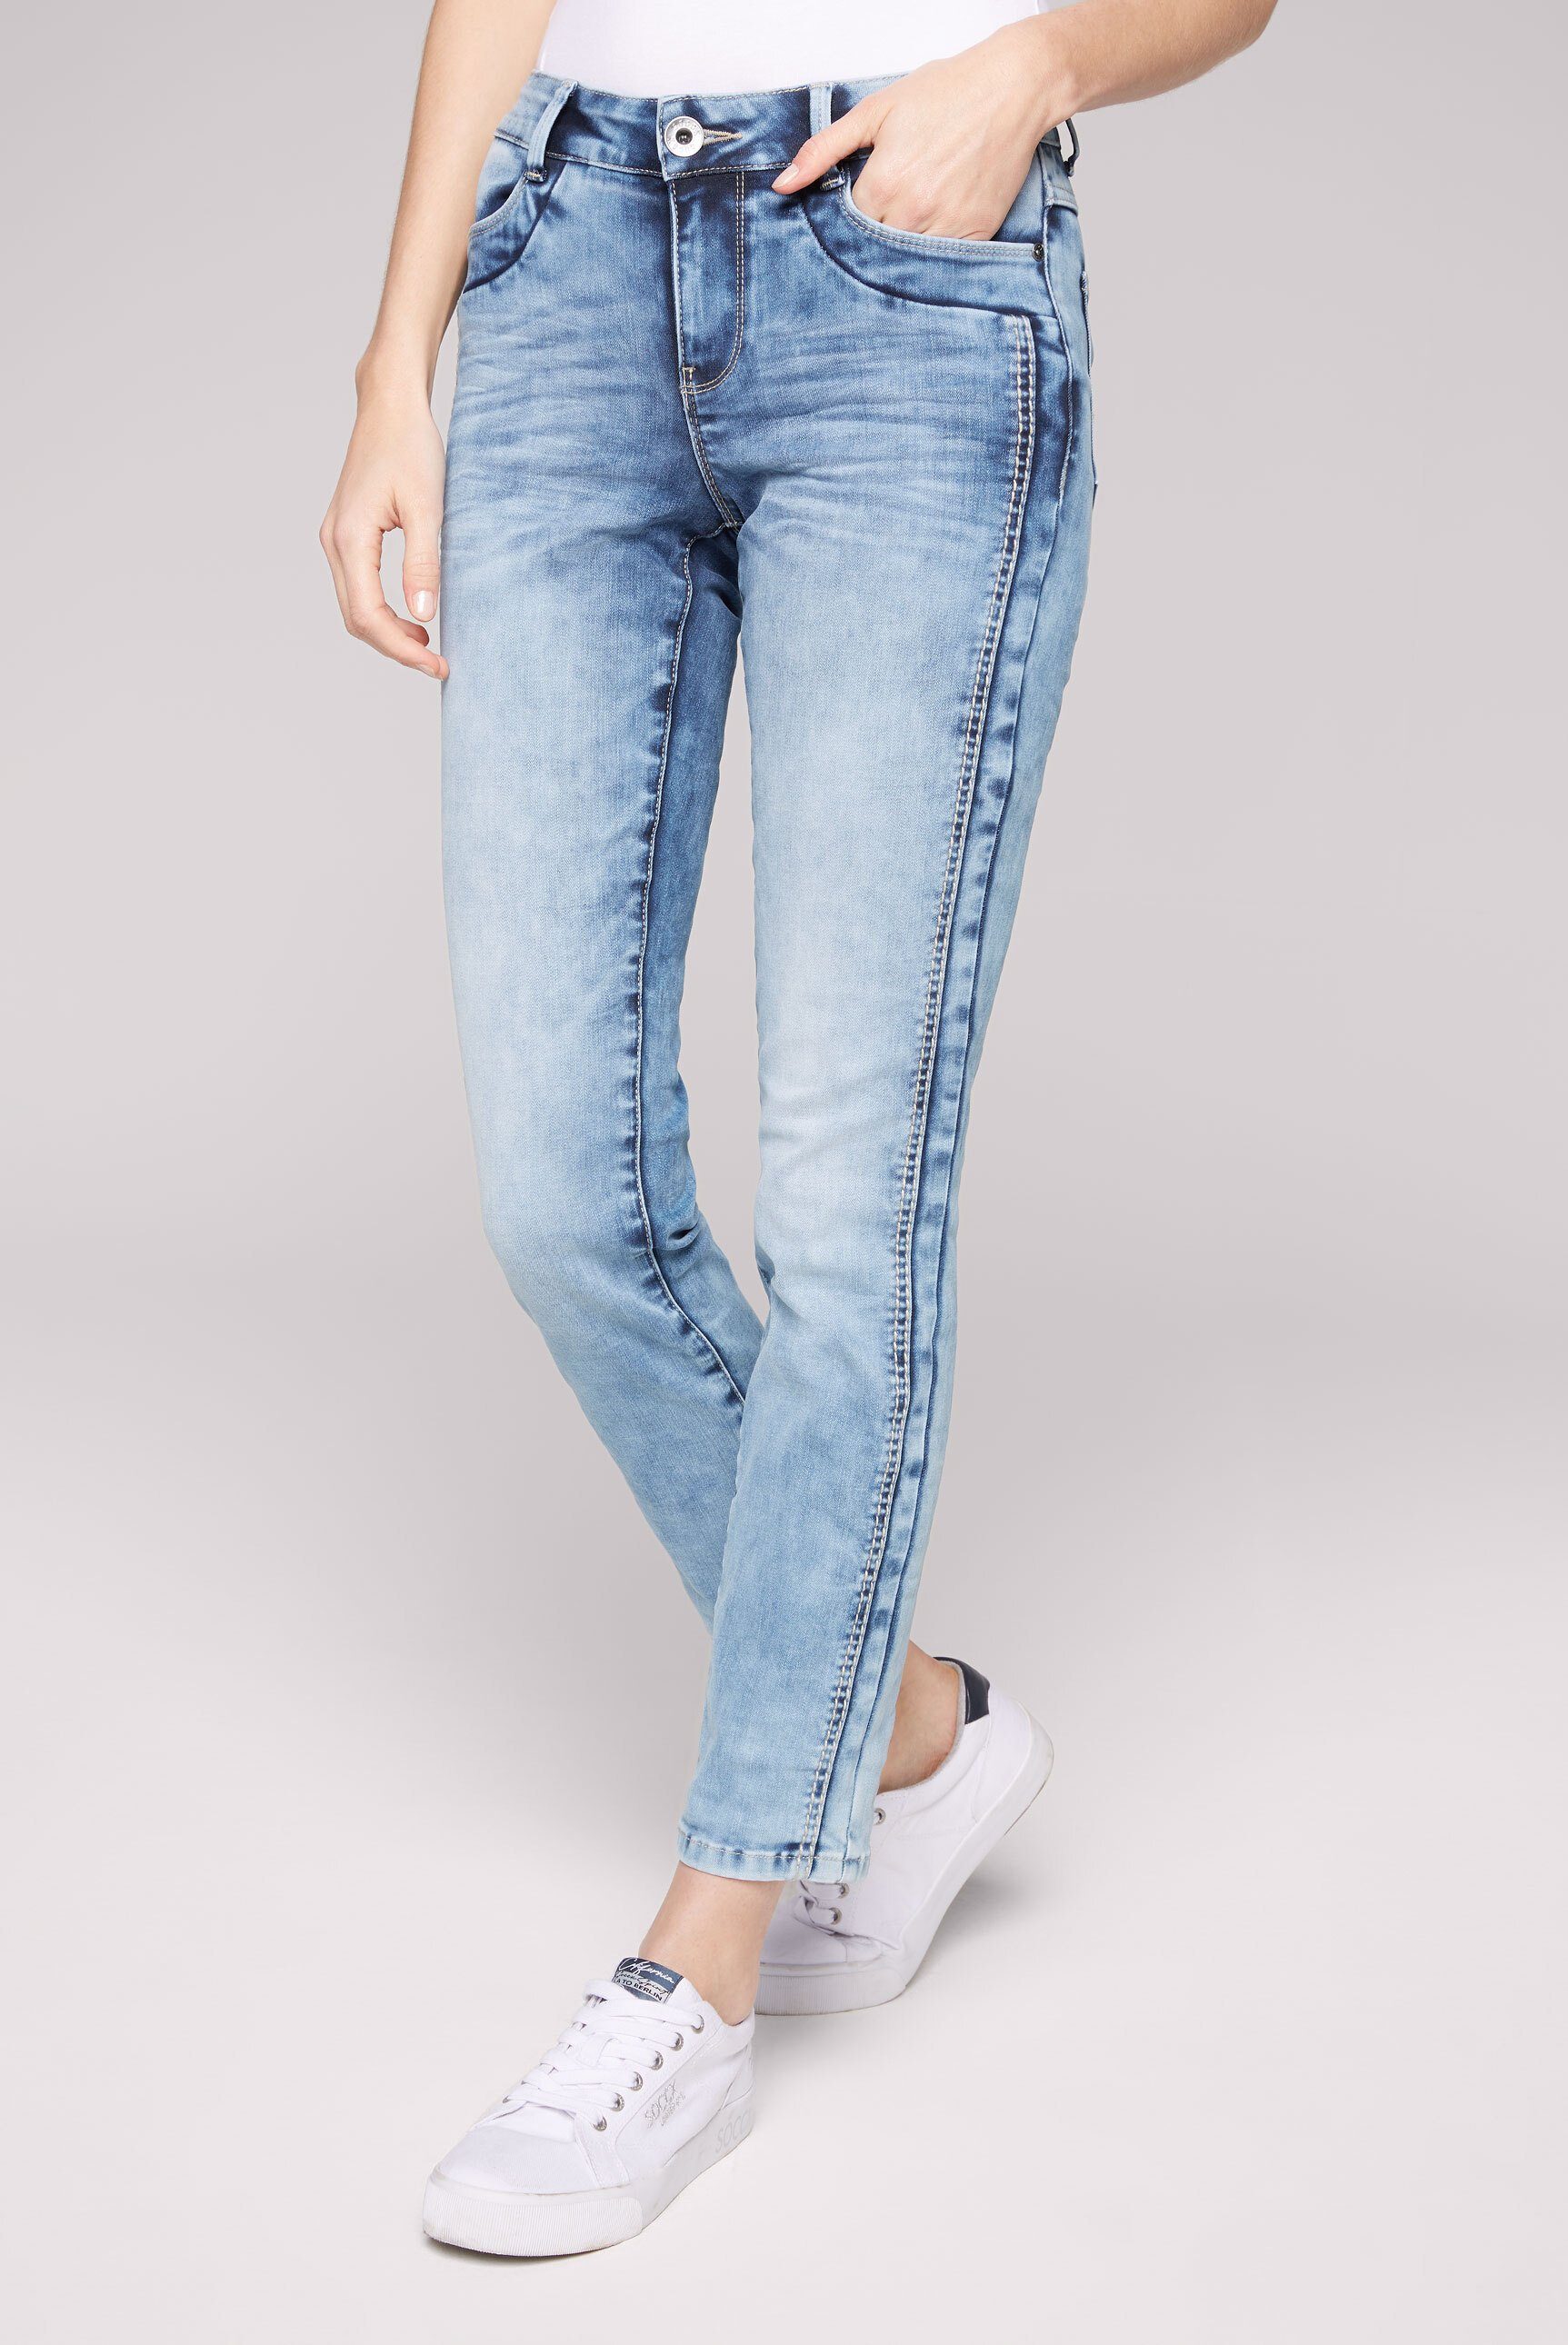 verkürztem Comfort-fit-Jeans Oberschenkelweite SOCCX Bein, Komfortable mit